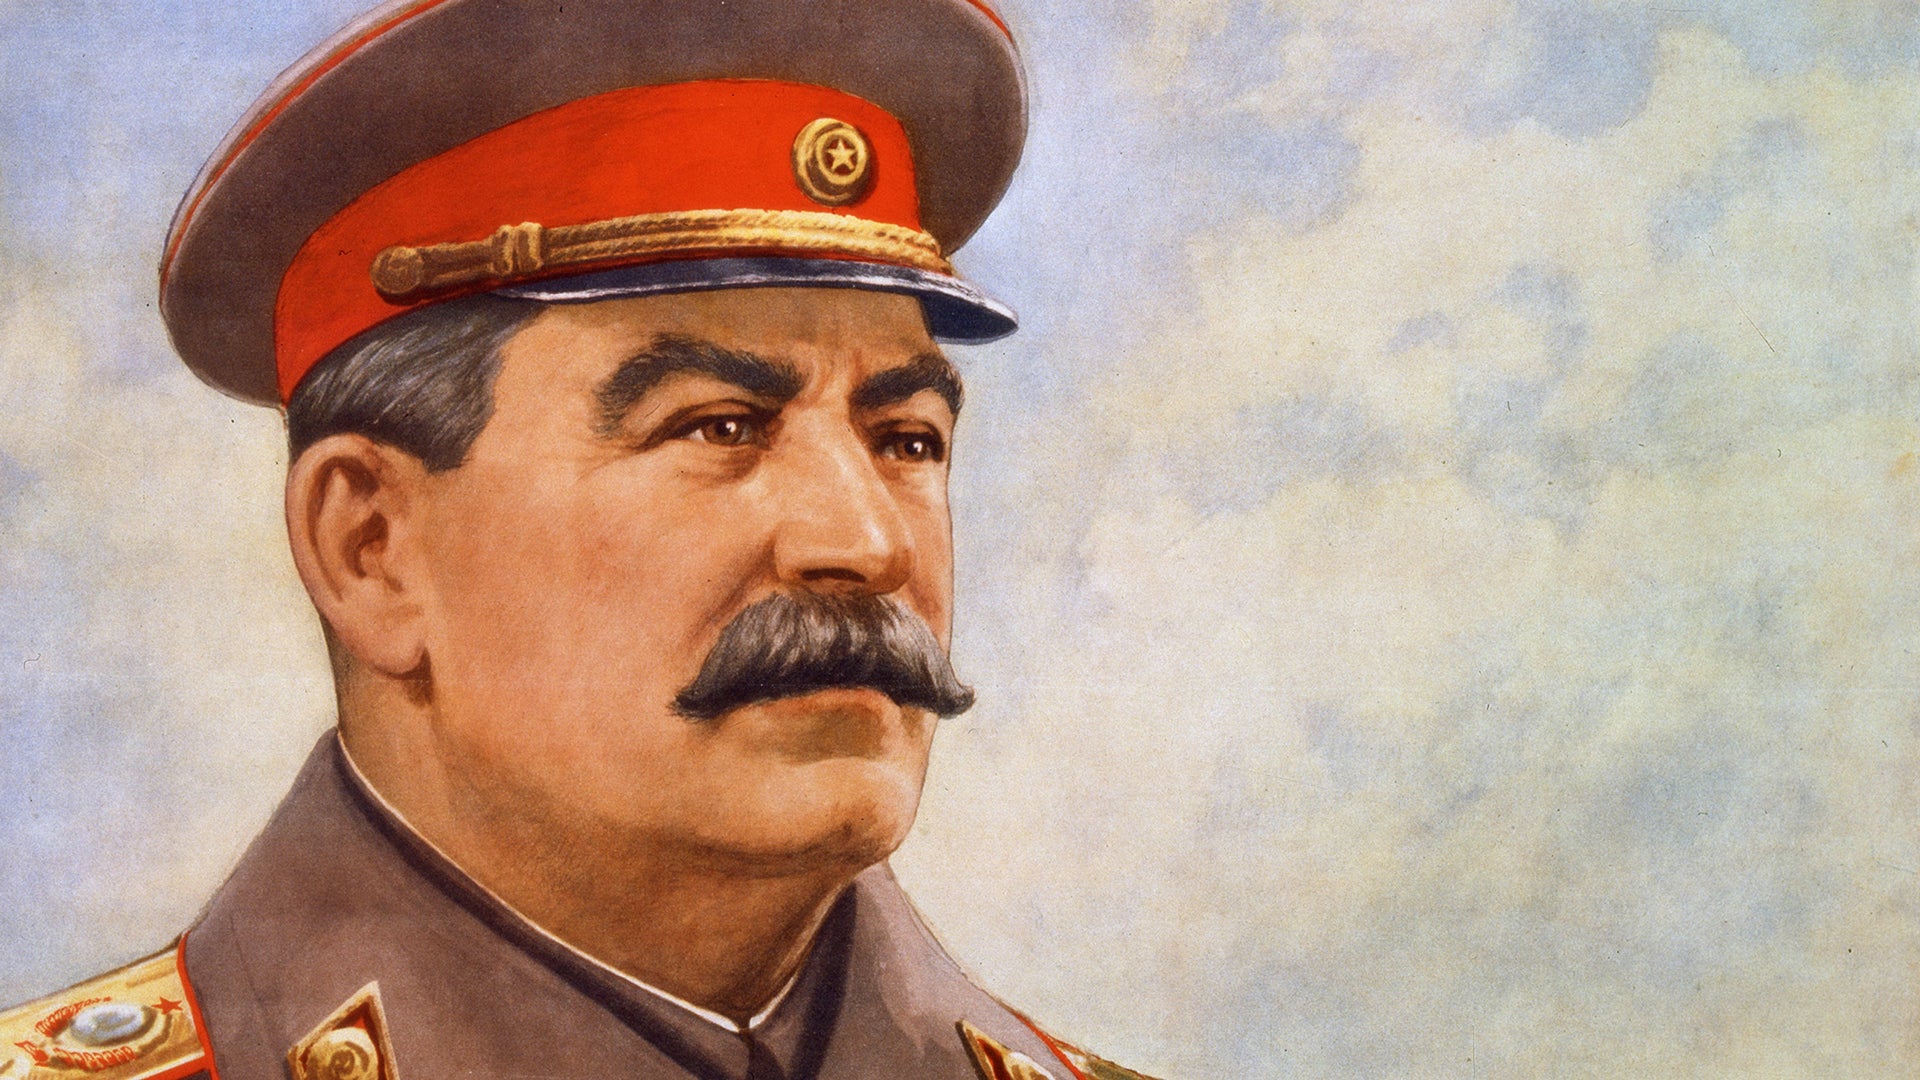 Stalinə heykəl qoyuldu - FOTO